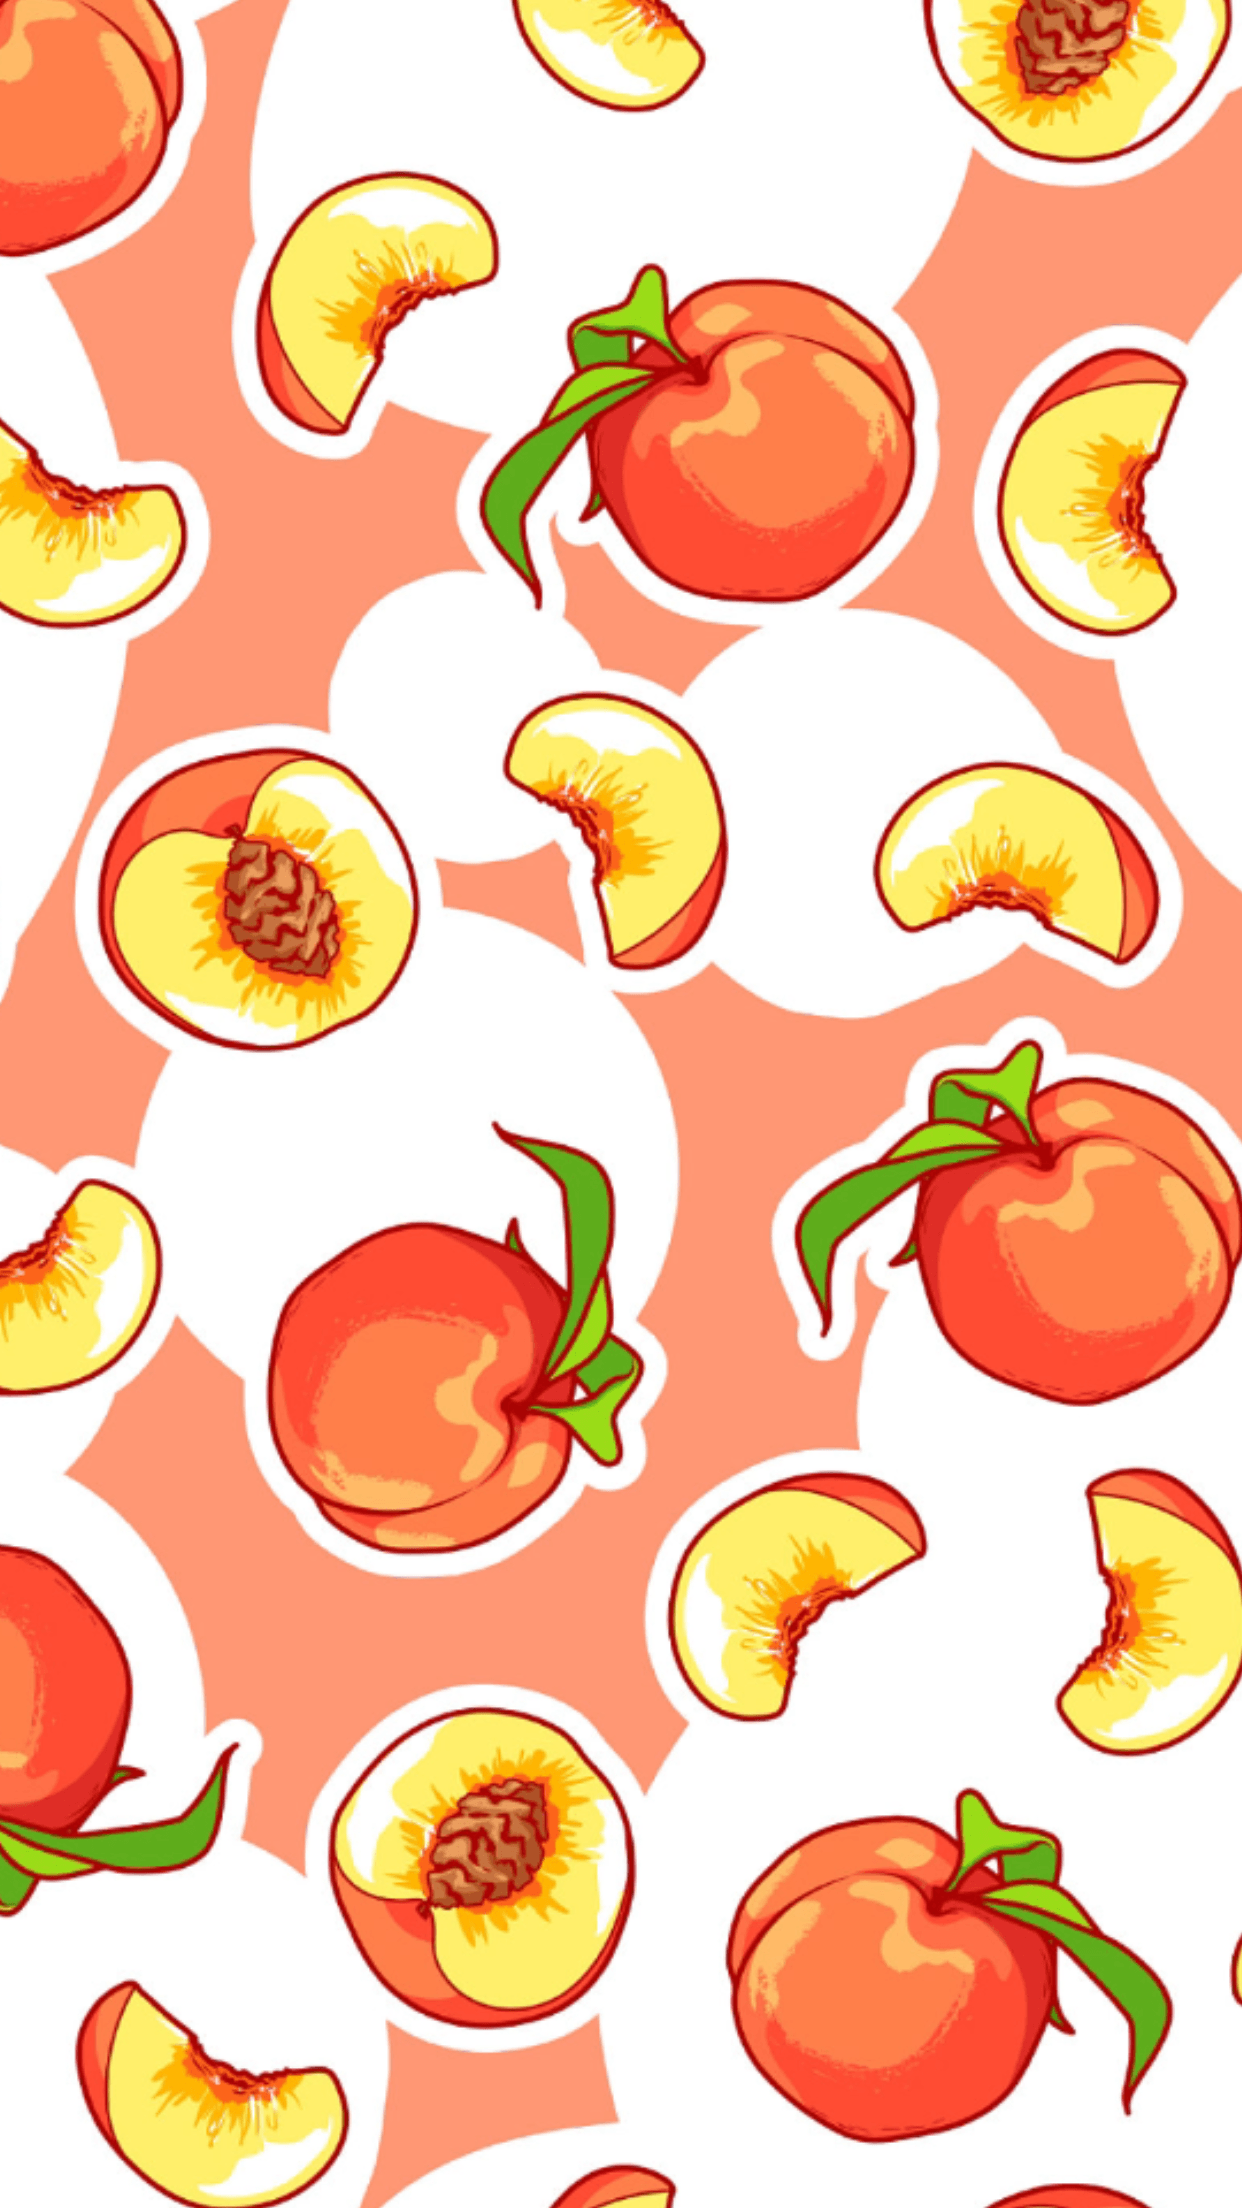 Wallpaper. Peach wallpaper, Fruit wallpaper, Cute fruit